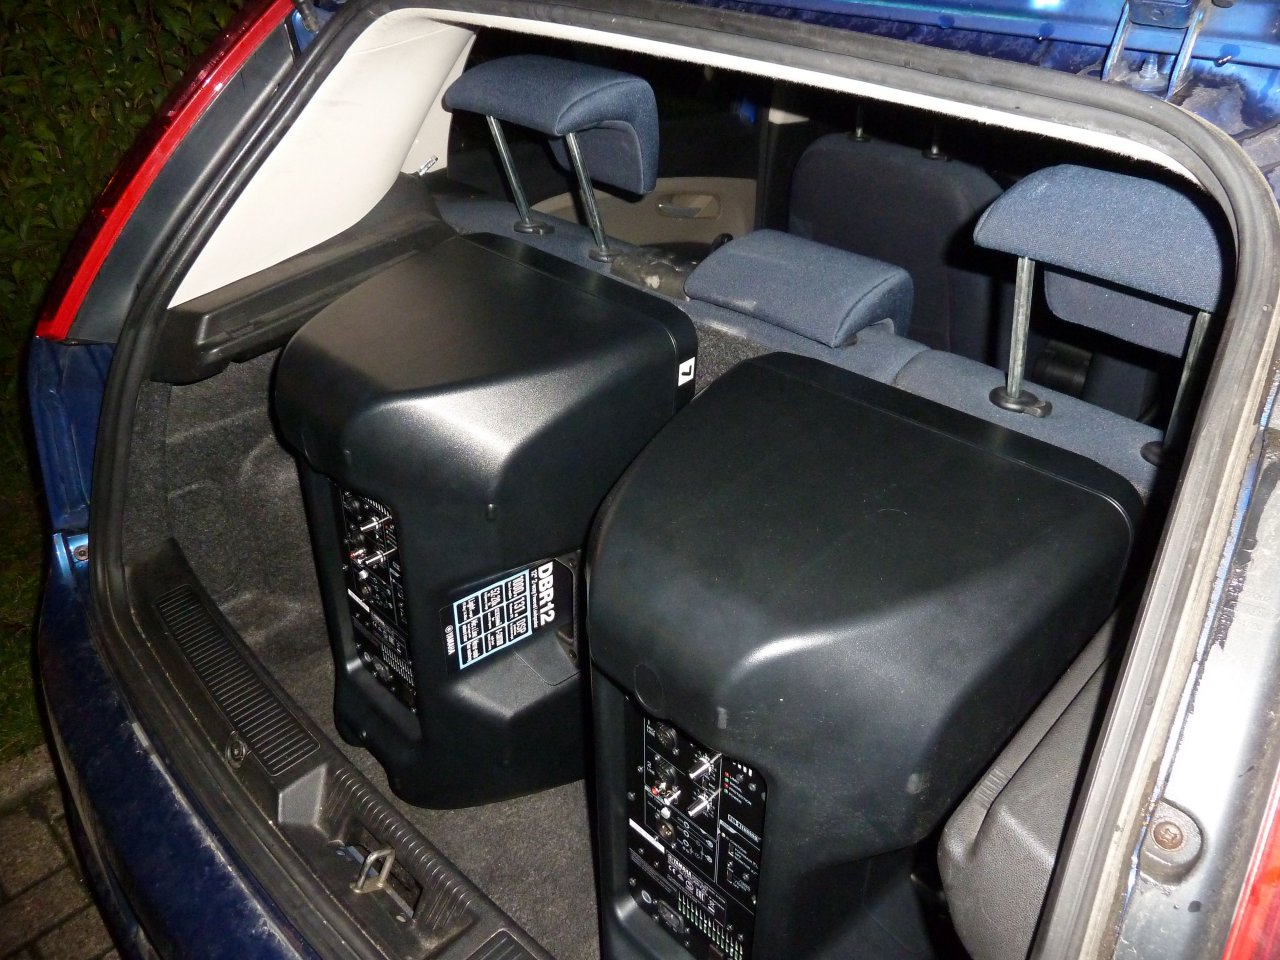 Yamaha DBR12 im Kofferraum eines Kleinwagens